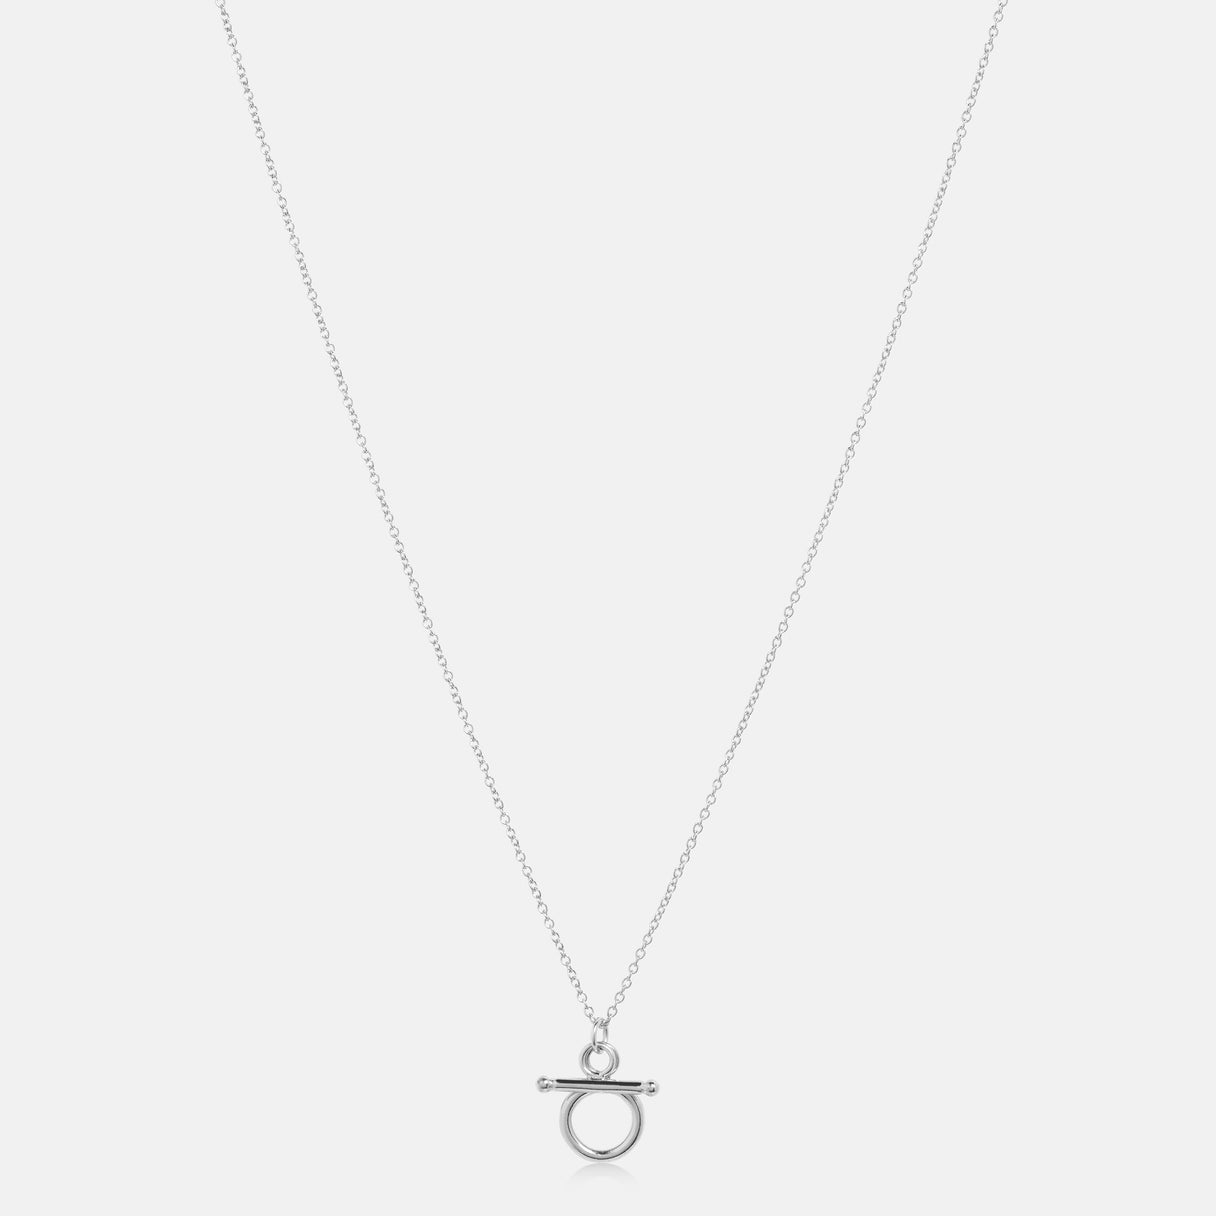 Petite Grand - Calico Necklace - Silver